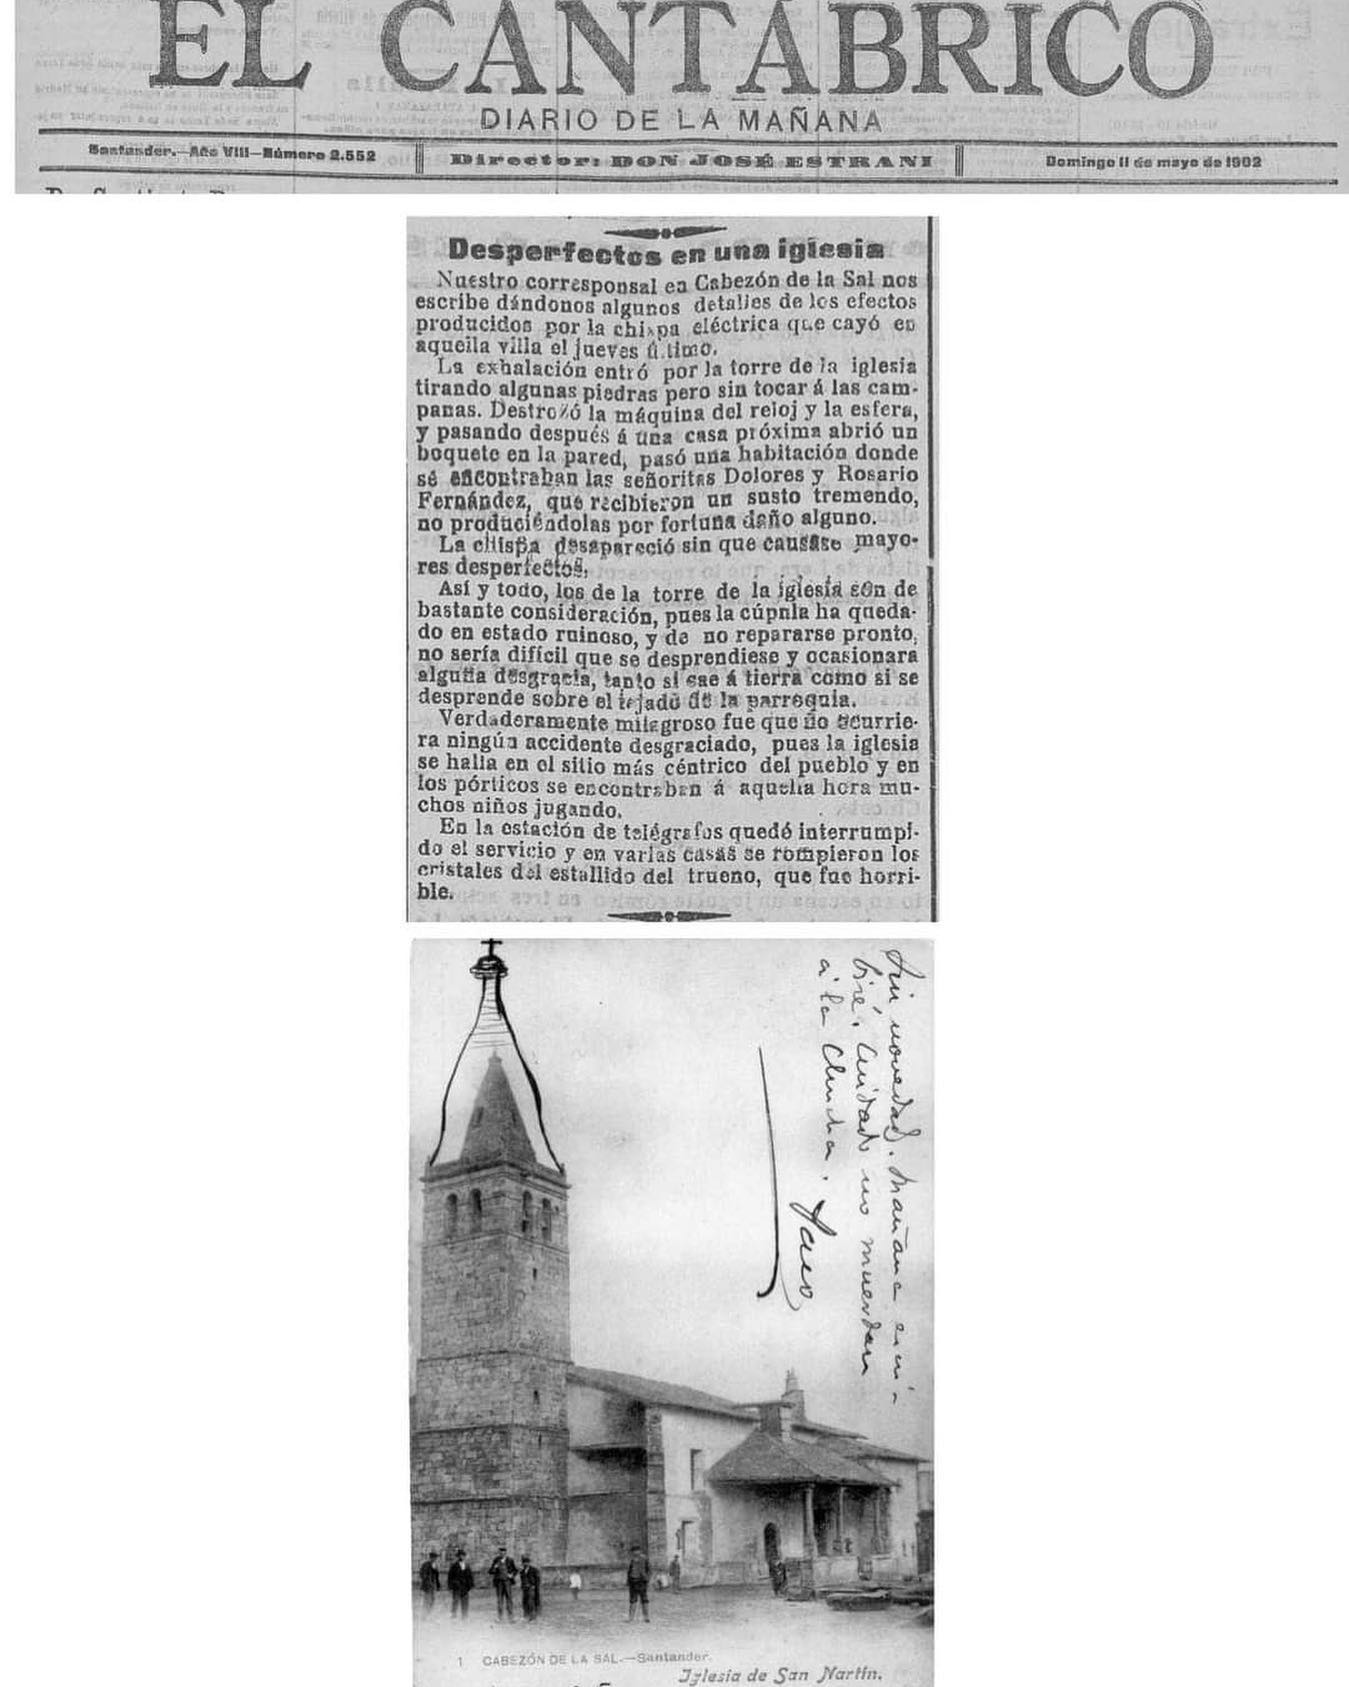 Hoy, 11 de mayo, hace 121 años que el periódico 🗞️”El Cántabrico” publicaba la noticia de los daños causados por una chispa eléctrica en Cabezondelasal. El trueno⚡️entró por la torre de la iglesia dañando su cúpula ⛪️motivo por el cual hubo que reconstruirla. La estética fue modificada, ya que originalmente iba rematada por un chapitel de pizarra￼ a cuatro aguas, por una cubierta de sillería de línea modernista. 

#cabezondelasal #turismocabezondelasal #cabezondelasaleshistoria #elcantabrico #NoticiasLocales #noticasdelpasado